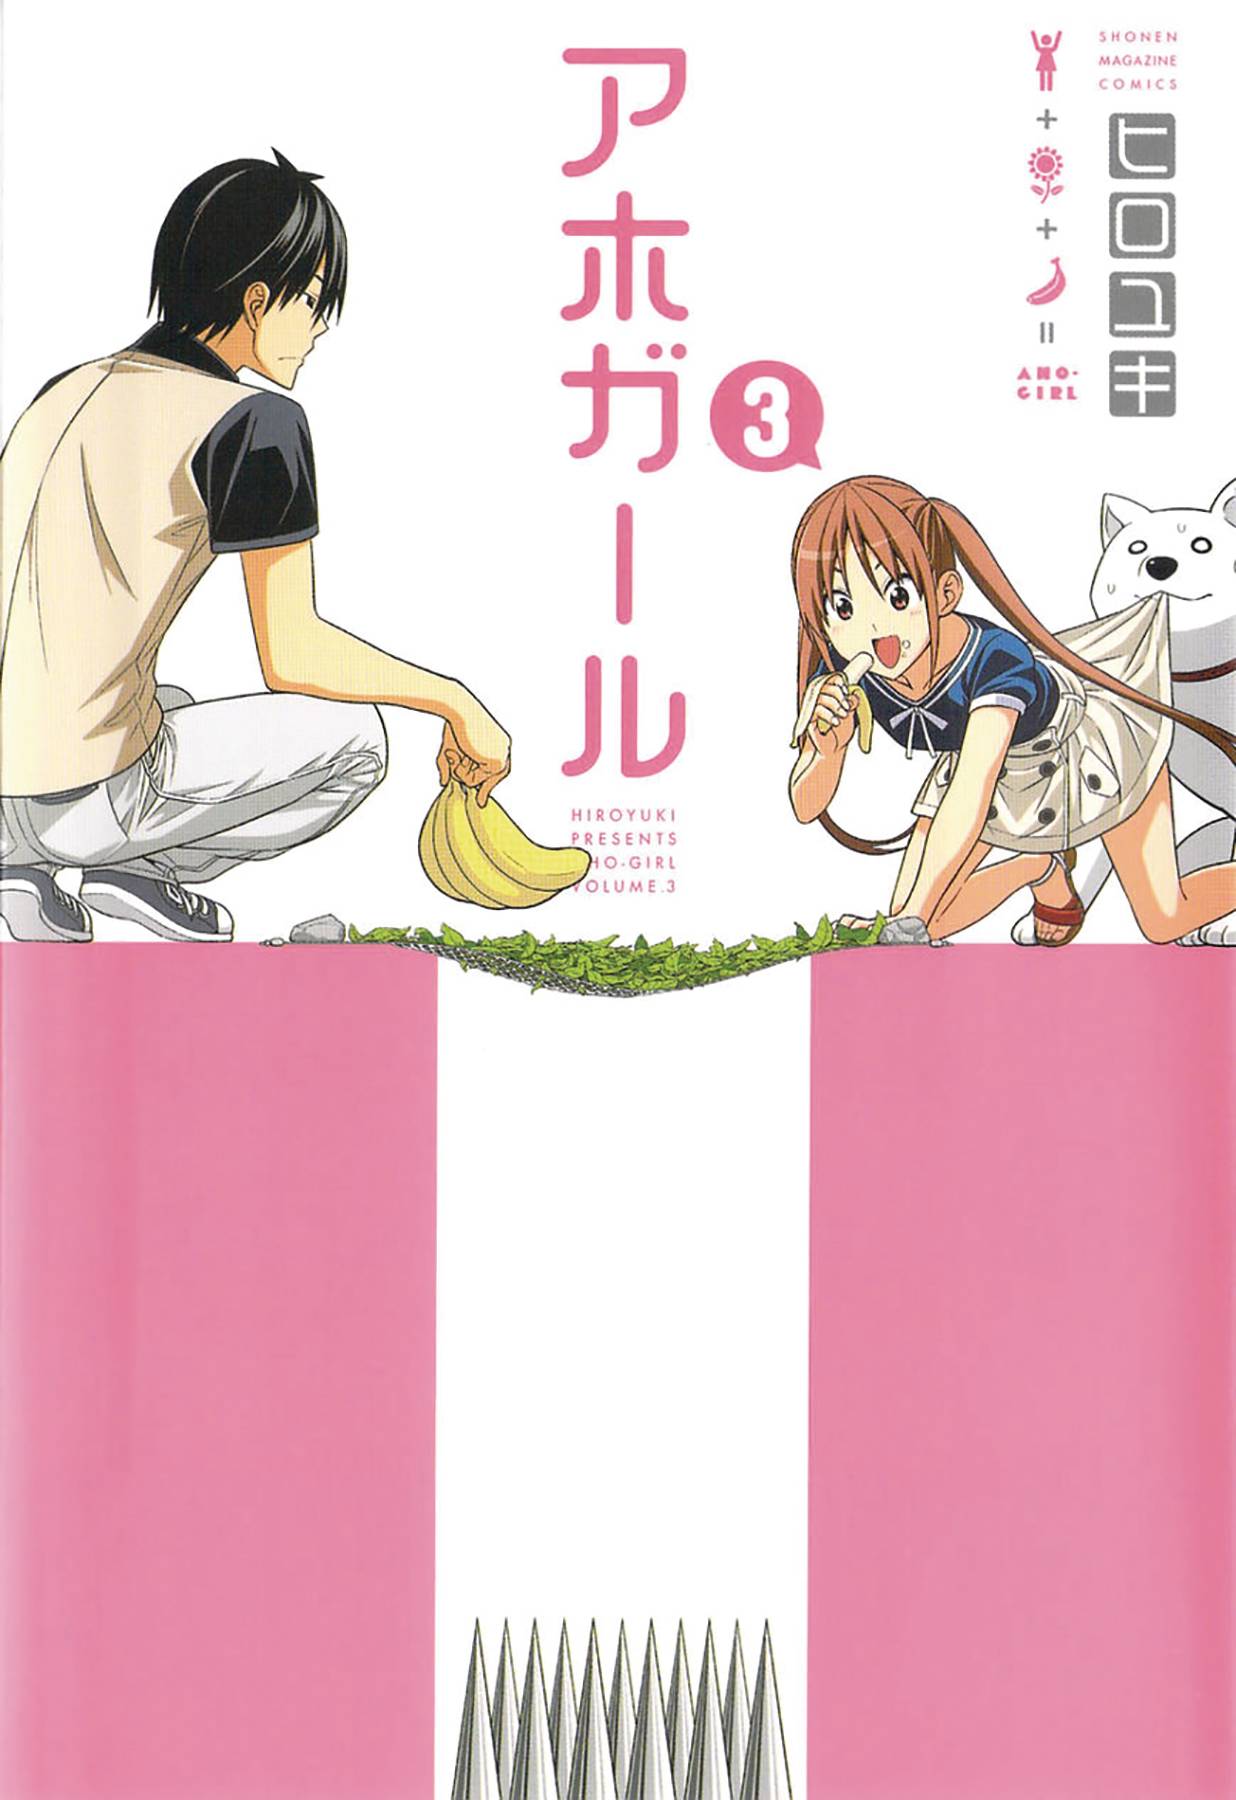 Aho Girl (Clueless Girl) Manga Volume 3